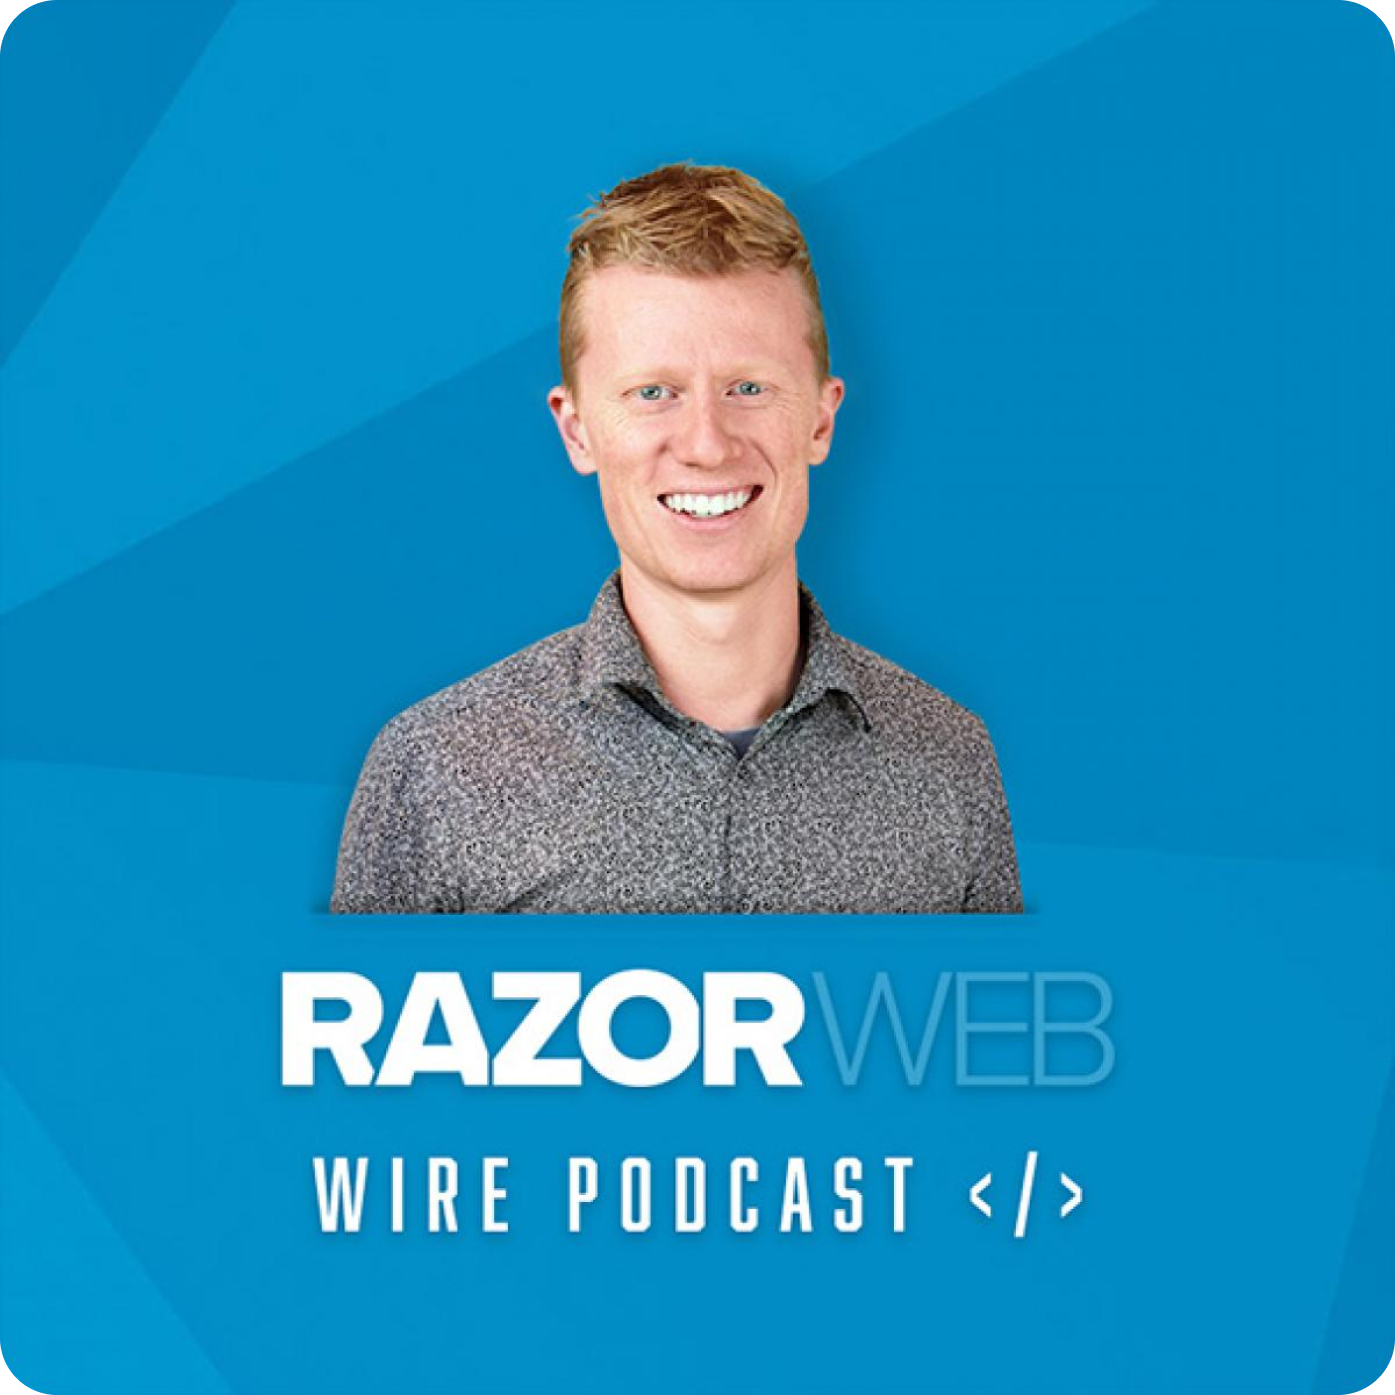 Razor Web Podcast